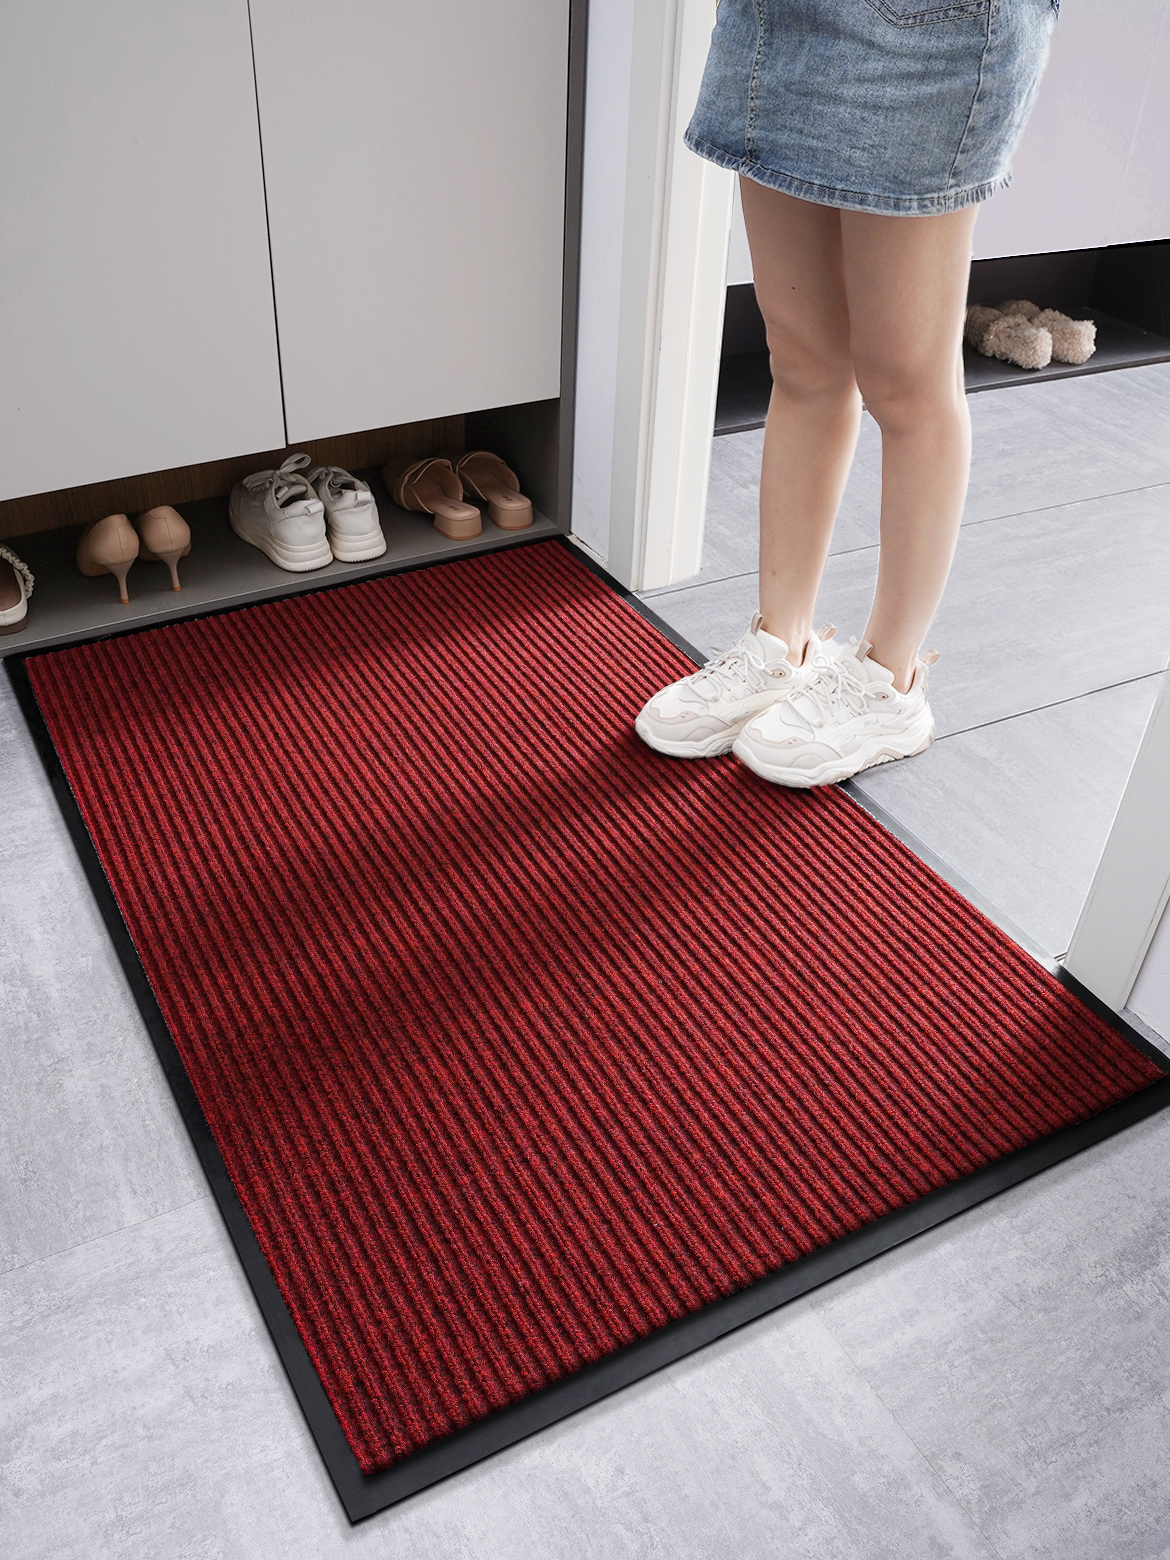 簡約現代風格玄關地墊易於清洗的化纖材質適合廚房走廊和陽臺使用